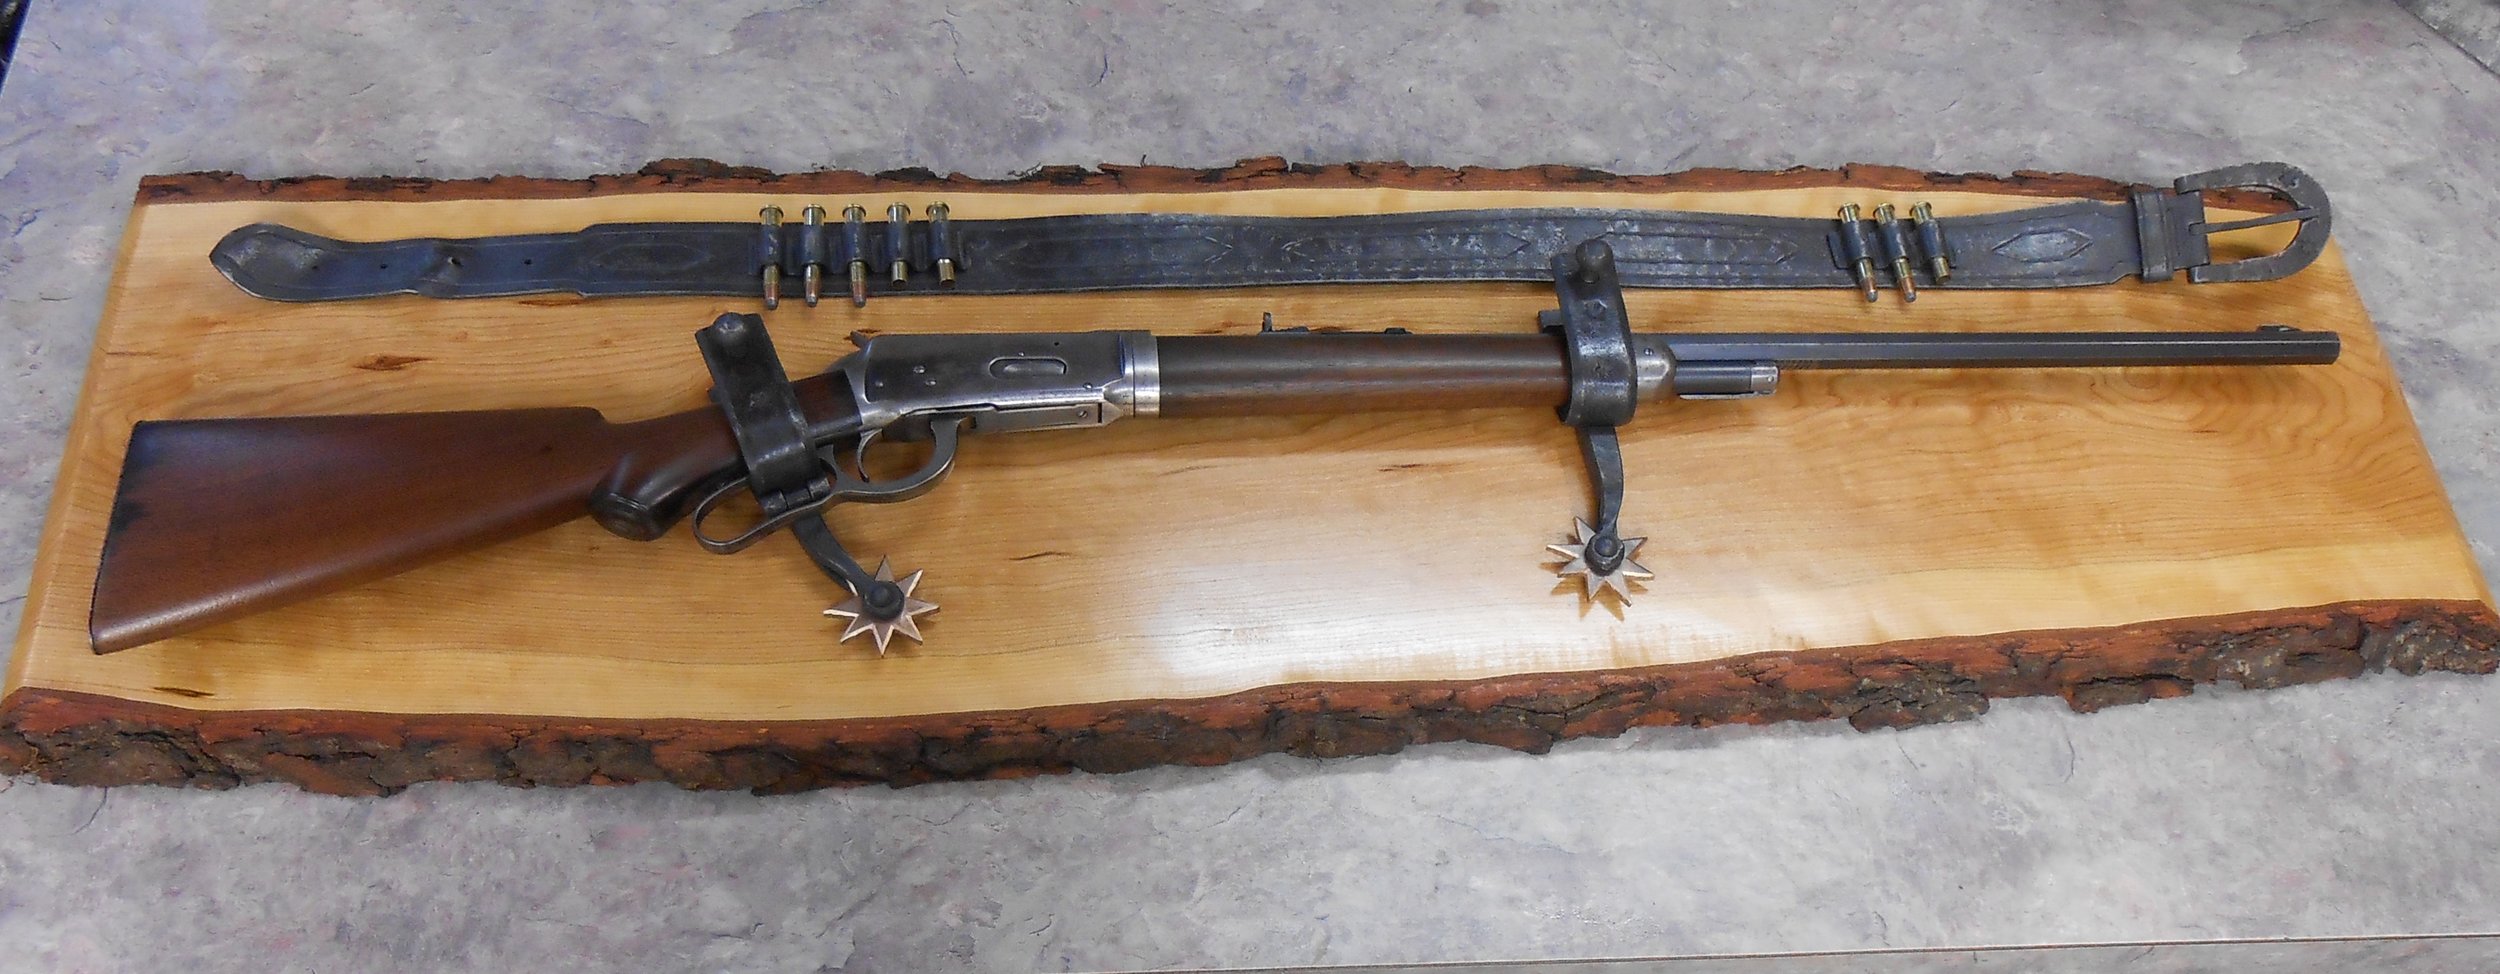 Gun Rack - Old Western Style